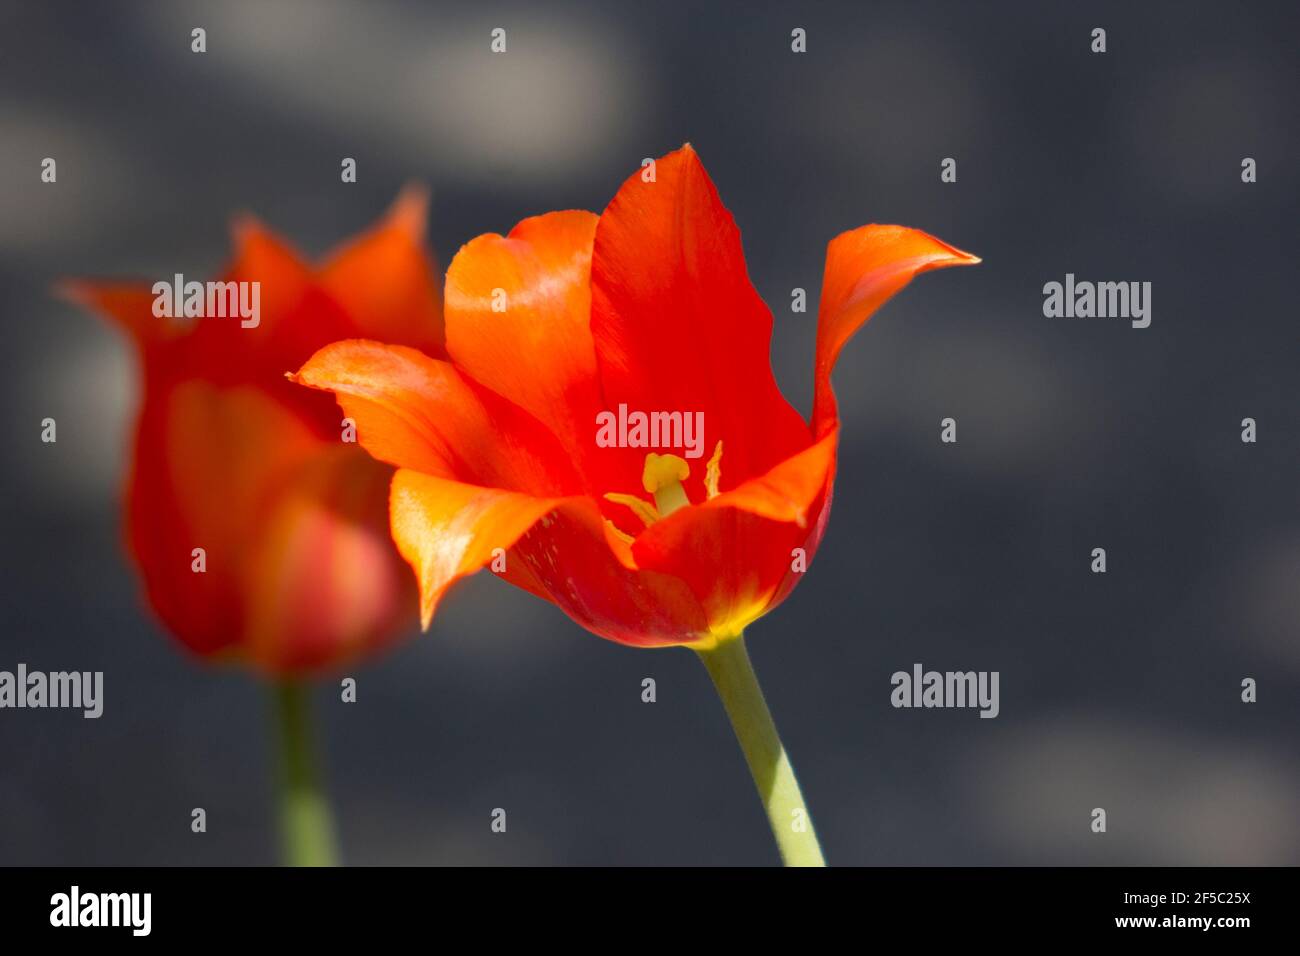 Tulipano arancione con petali che si aprono Foto Stock